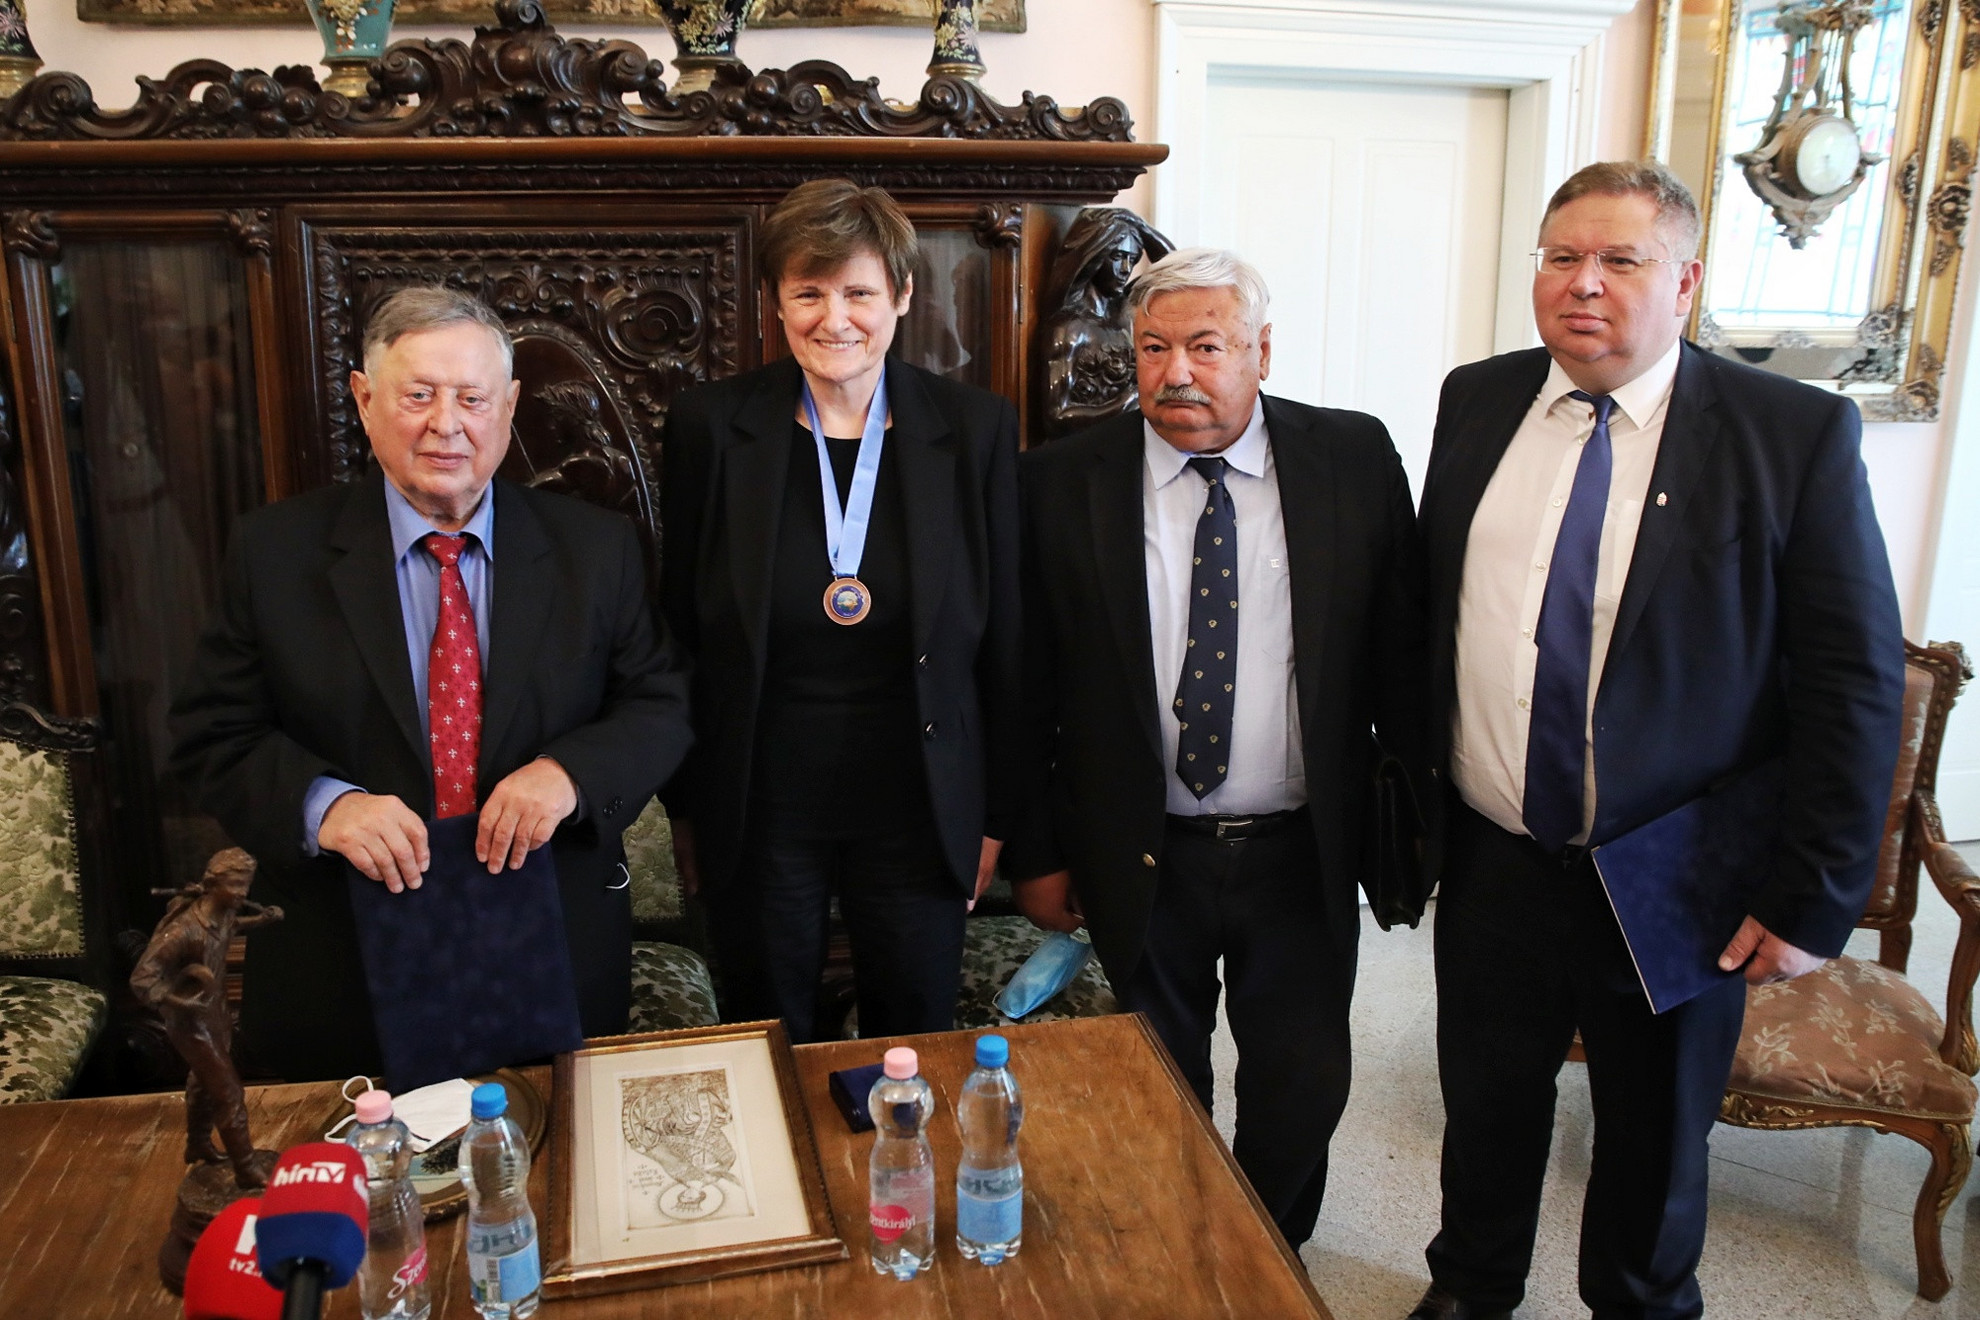 Szunai Miklós, az Emberi Méltóság Tanácsának főtitkára (b), idősebb Lomnici Zoltán, az Emberi Méltóság Tanácsának elnöke (j2), valamint Bajkai István országgyűlési képviselő (j1) a kitüntetett Karikó Katalinnal